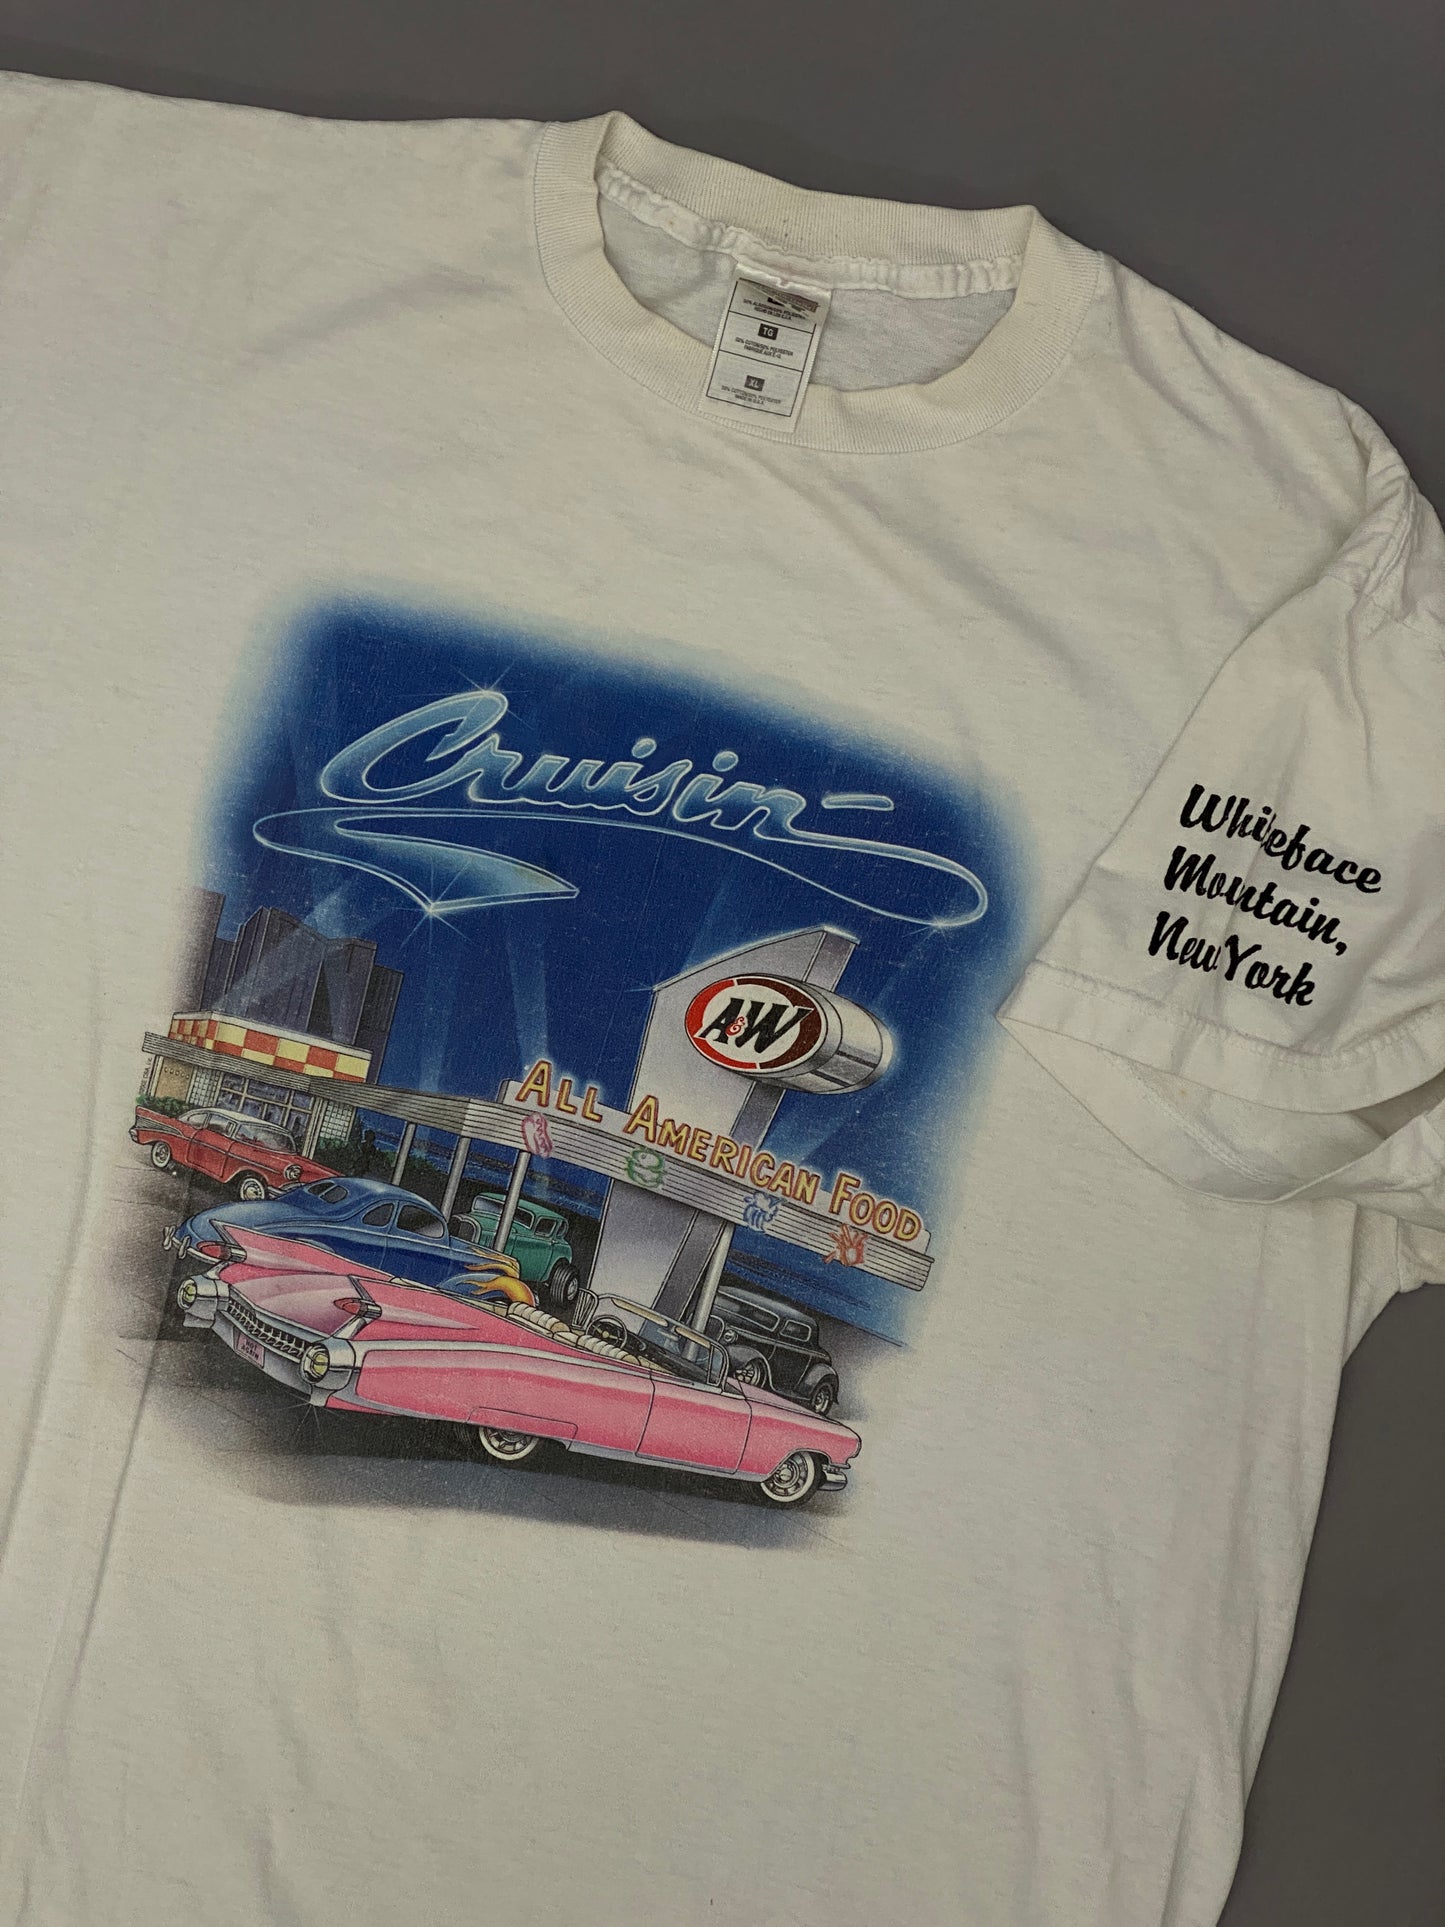 Vintage Cruising T-shirt